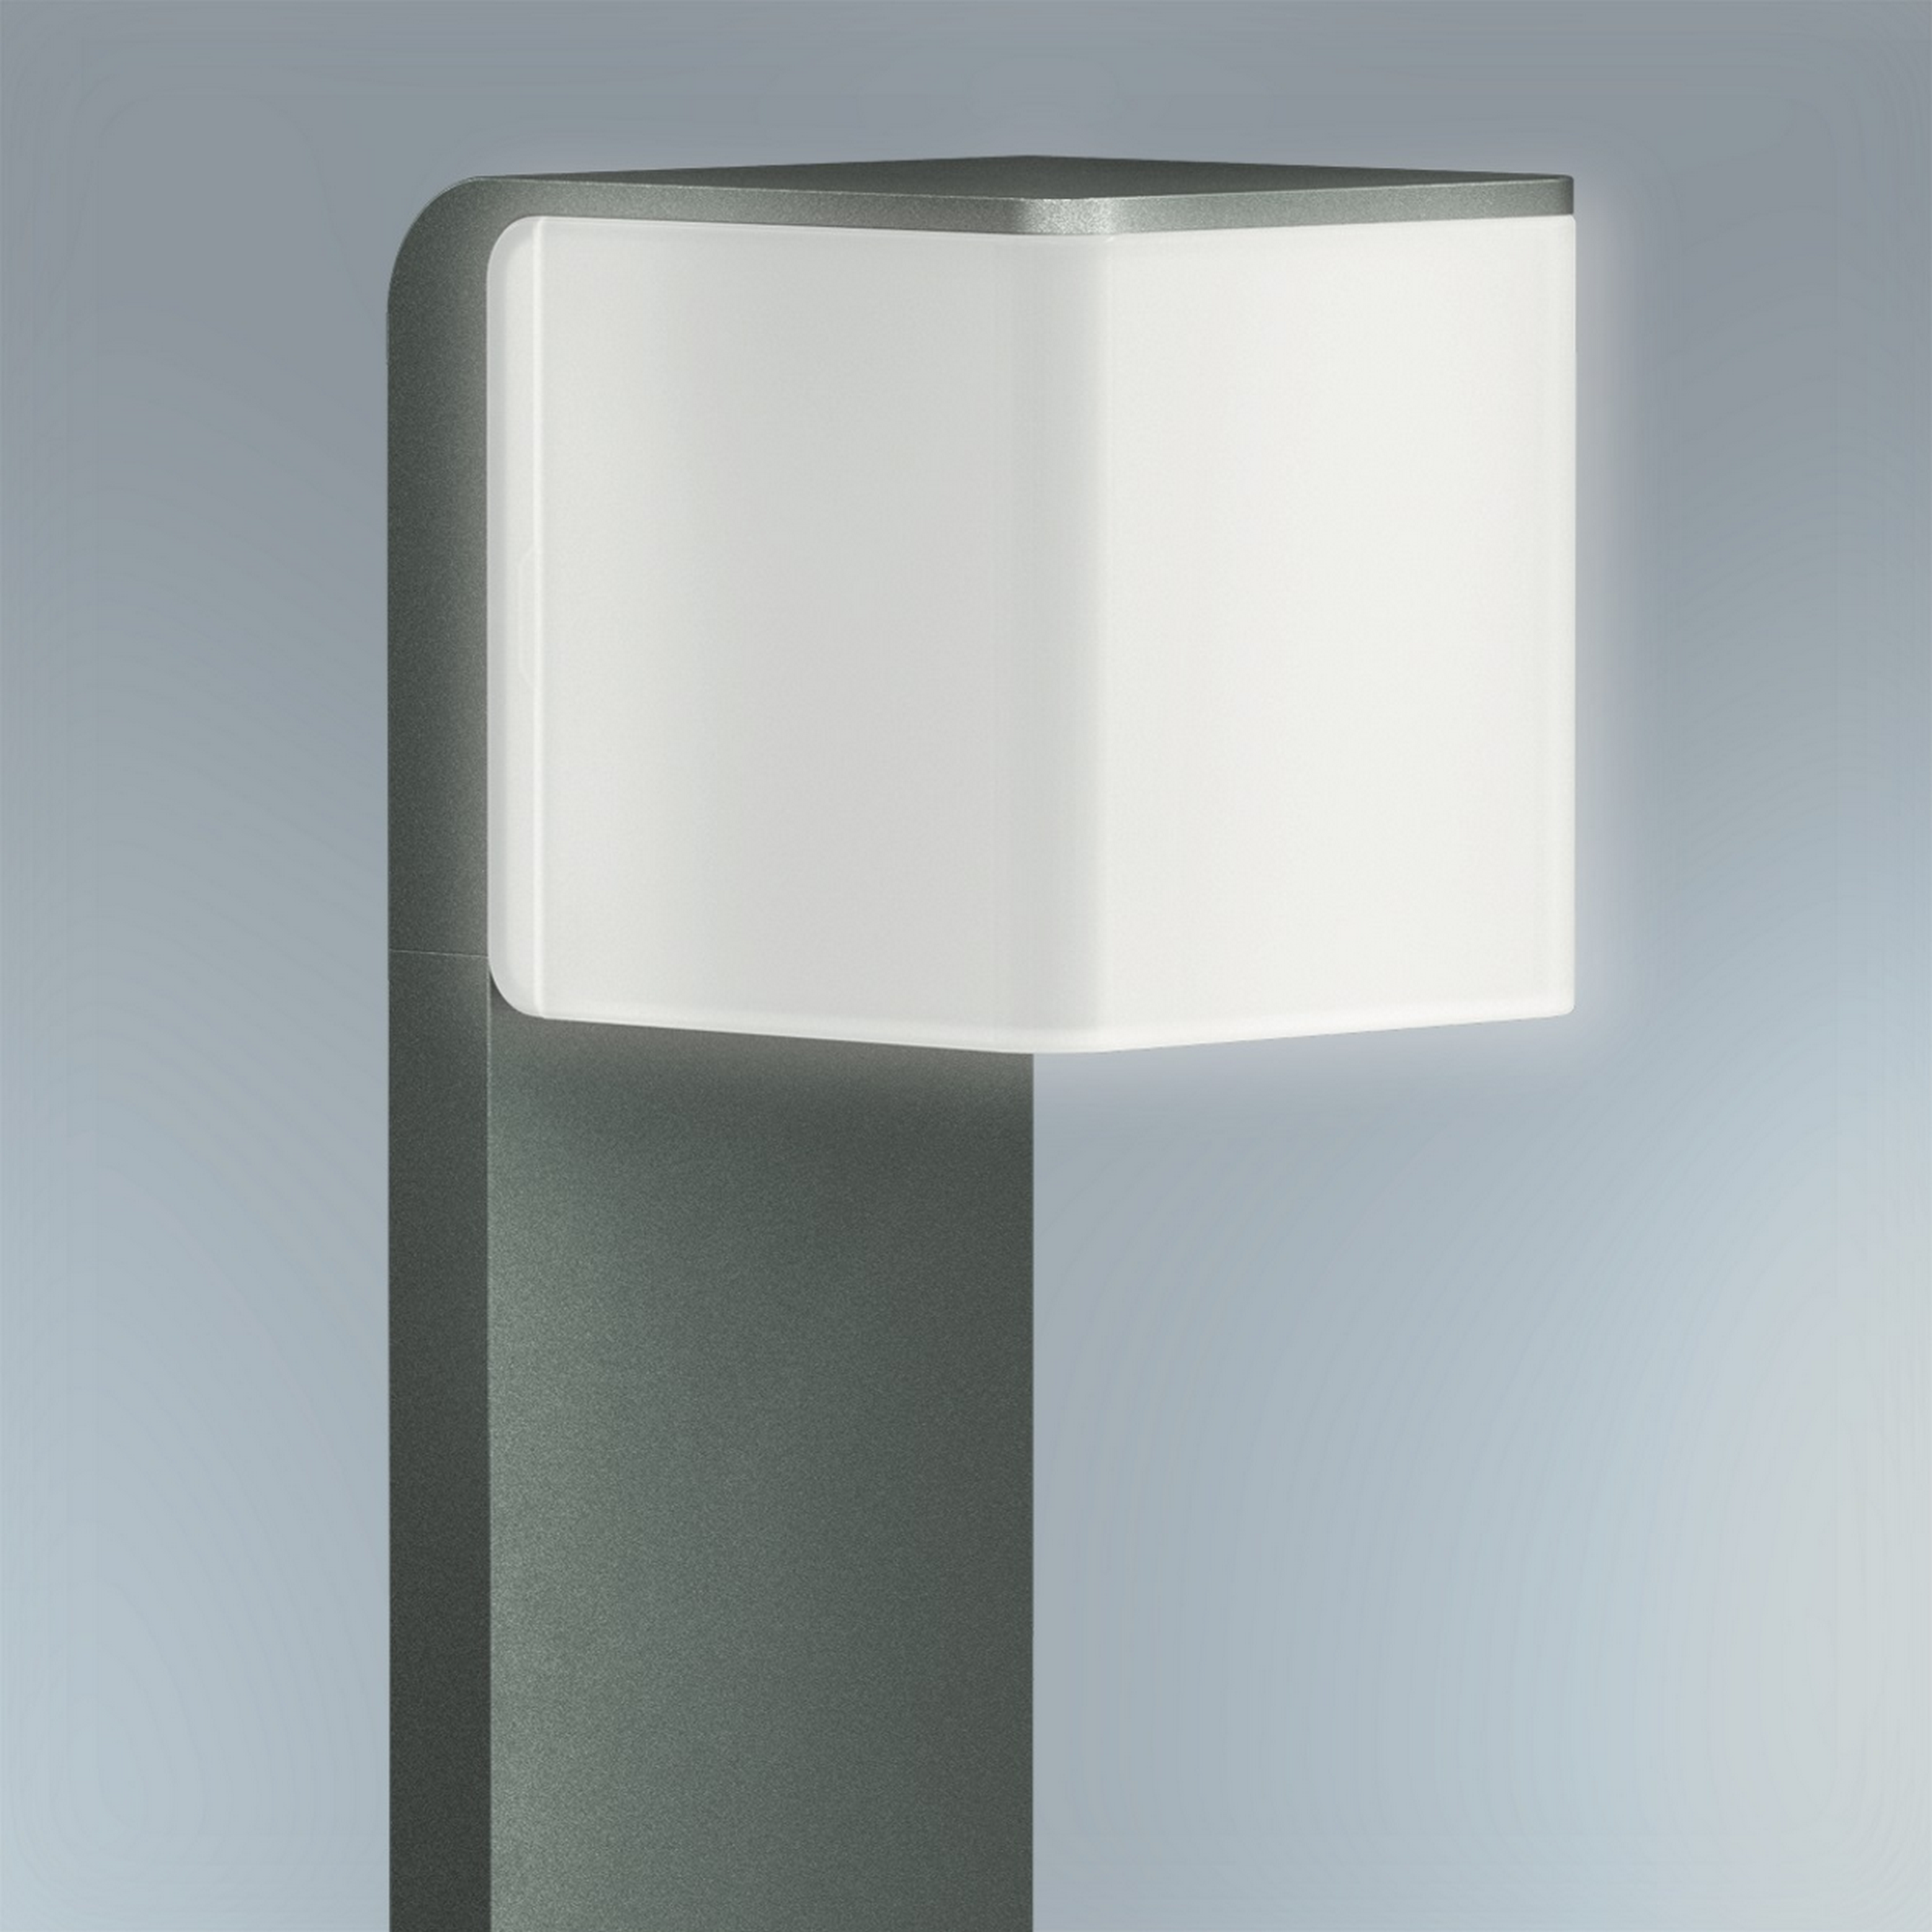 LED-Wegeleuchte 'GL 80 SC' mit Bewegungsmelder anthrazit 9,1 W 11 x 63,3 cm + product picture